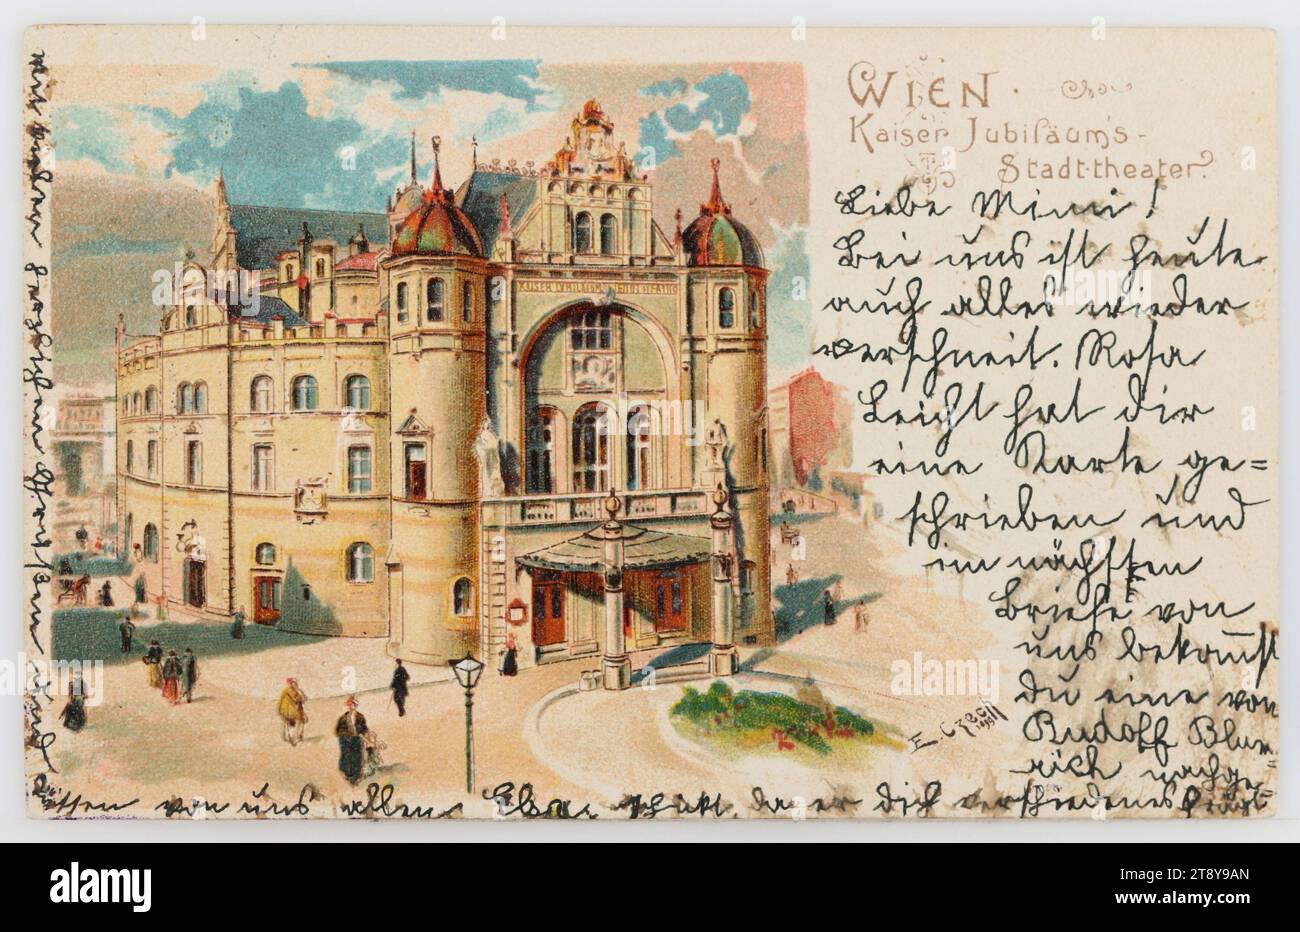 9th, Währinger Straße 78 - Volksoper, carte postale, inconnu, éditeur, 1900, carton, lithographie couleur, inscription, DE, Vienne, TO, Gries - Bozen, ADRESSE, à Hochwohlgeboren Fräulein, à Gries-Bozen Hôtel, mon séjour Südtirol, MESSAGE, Chère Mimi!, avec nous aujourd'hui tout est aussi neigé à nouveau. Rosa Leicht vous a écrit une carte et dans la prochaine lettre de nous, vous recevrez une de Rudolf Blumrich, parce qu'il vous demande diverses choses, avec beaucoup de salutations chaleureuses et des baisers de nous tous Elsa, musique, Théâtre, médias et communication, cartes postales avec translittération Banque D'Images